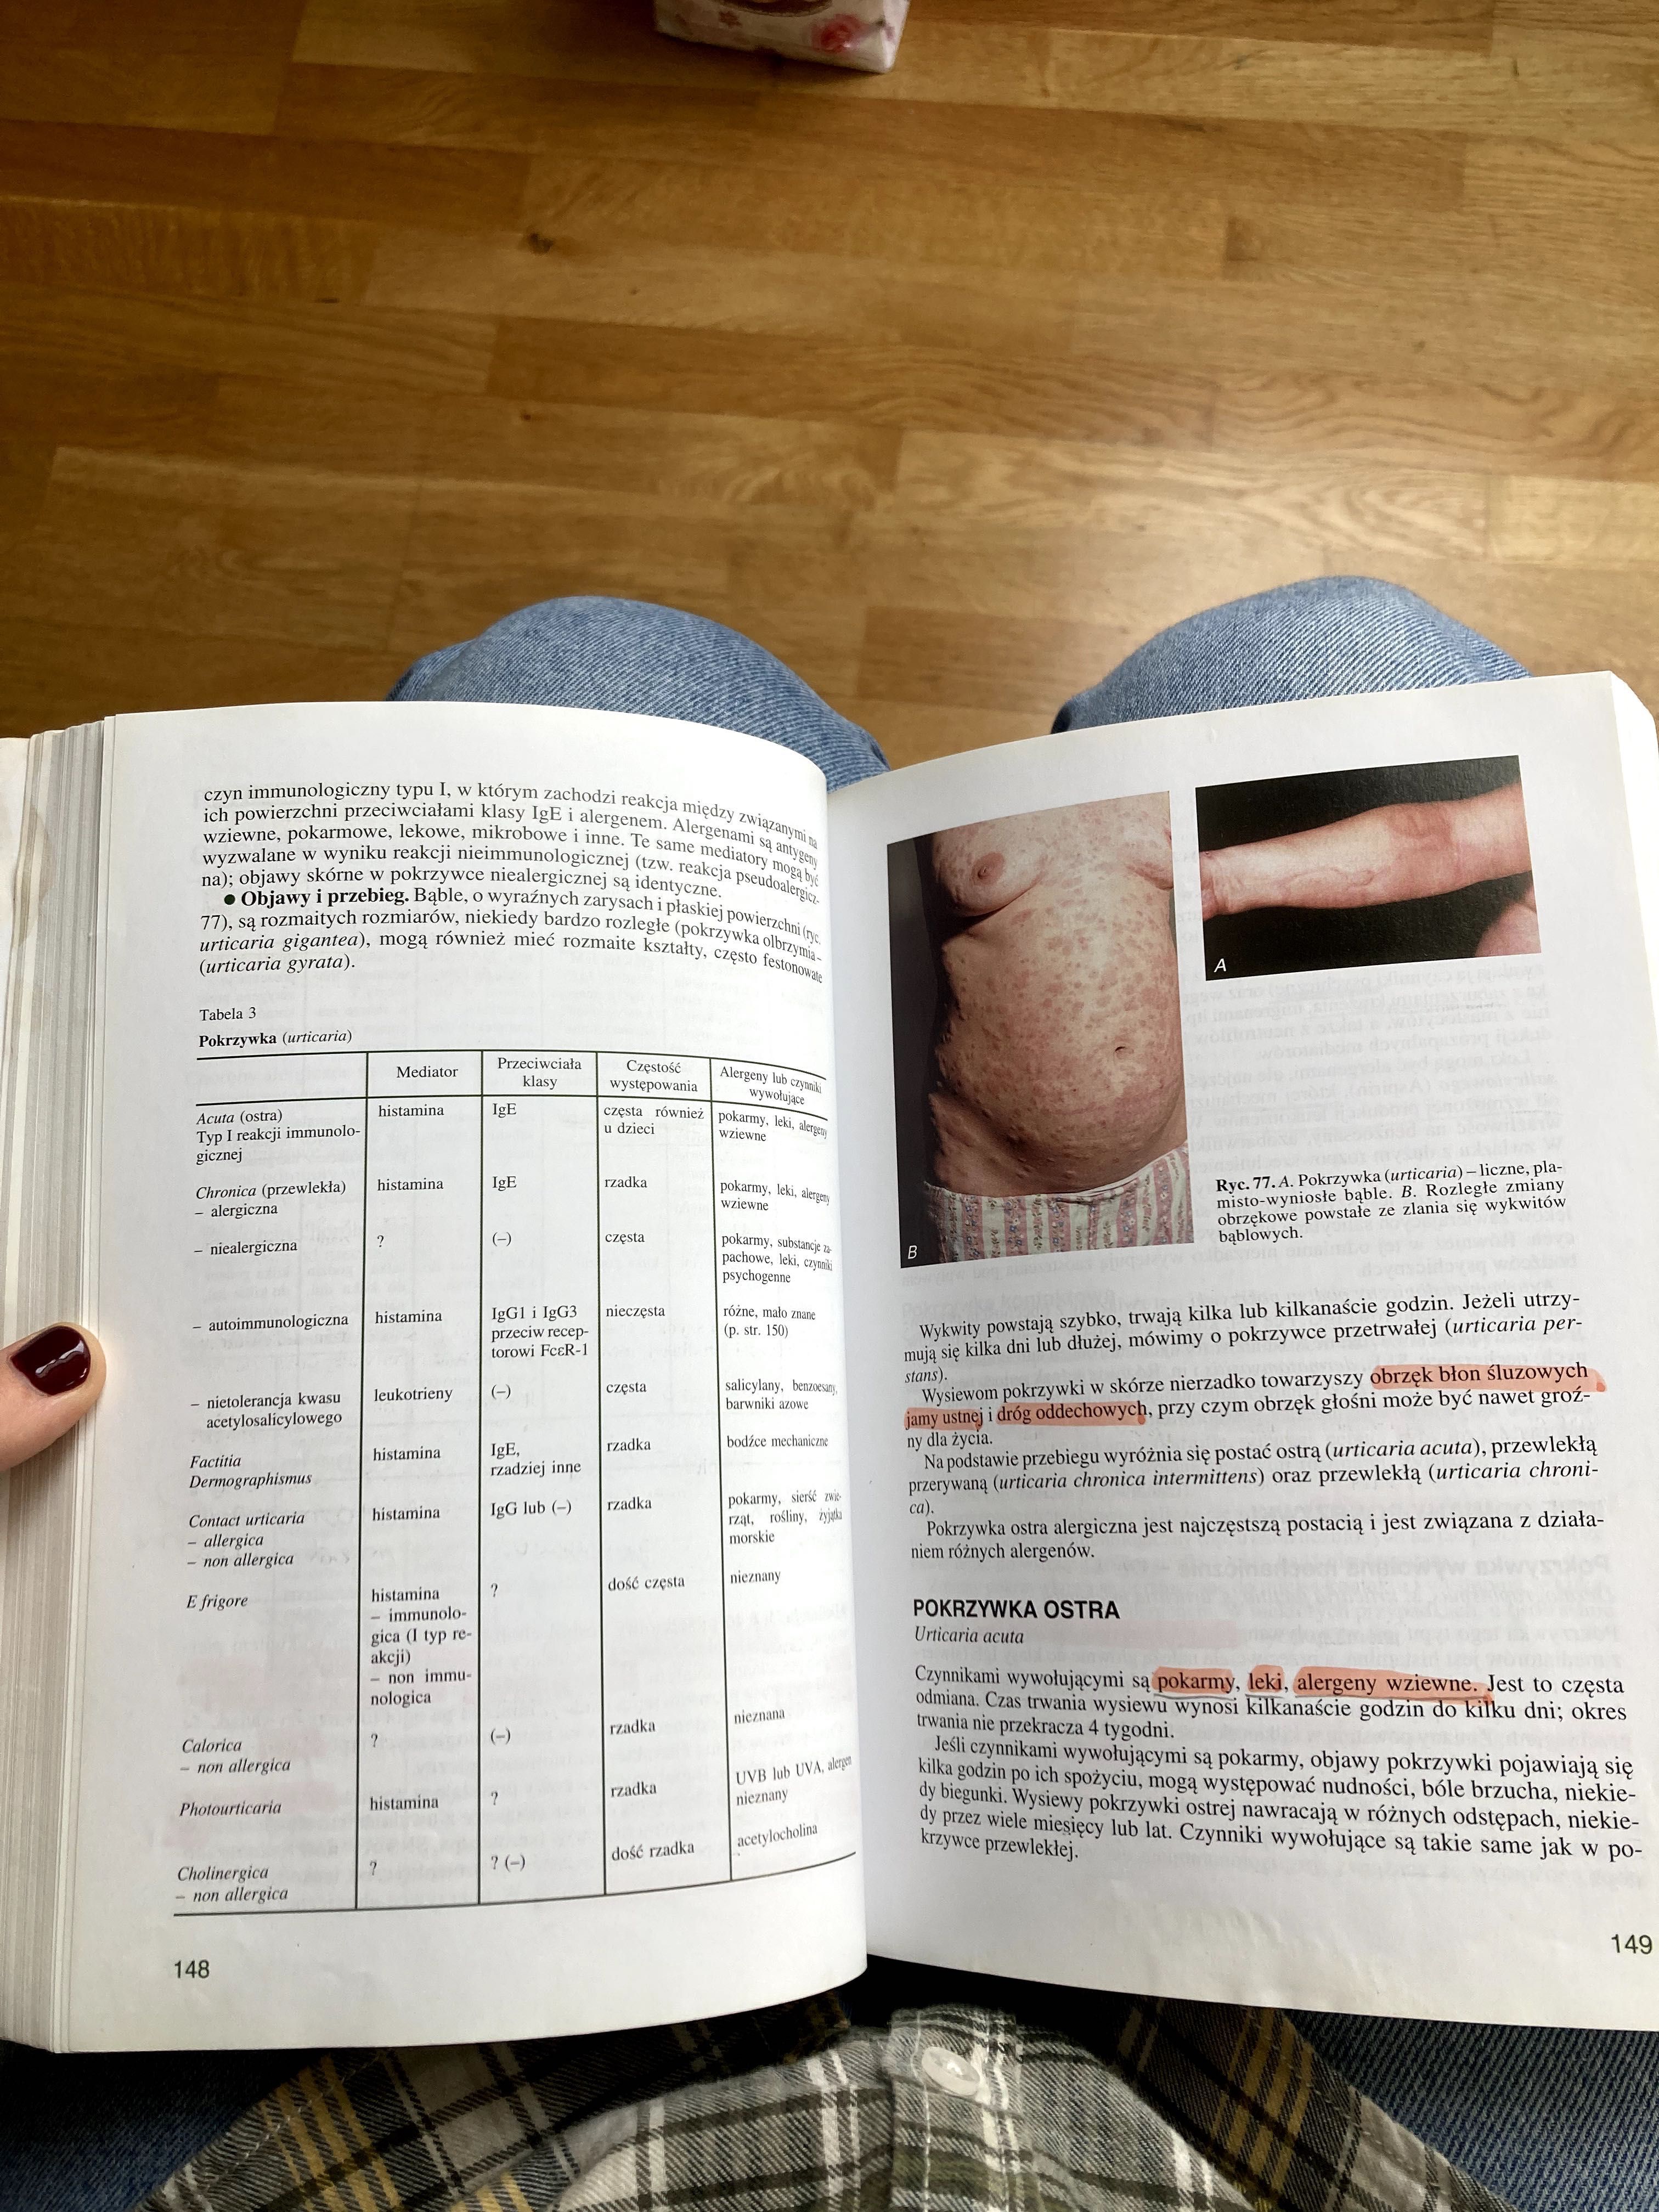 Dermatologia Choroby skóry Jabłońska